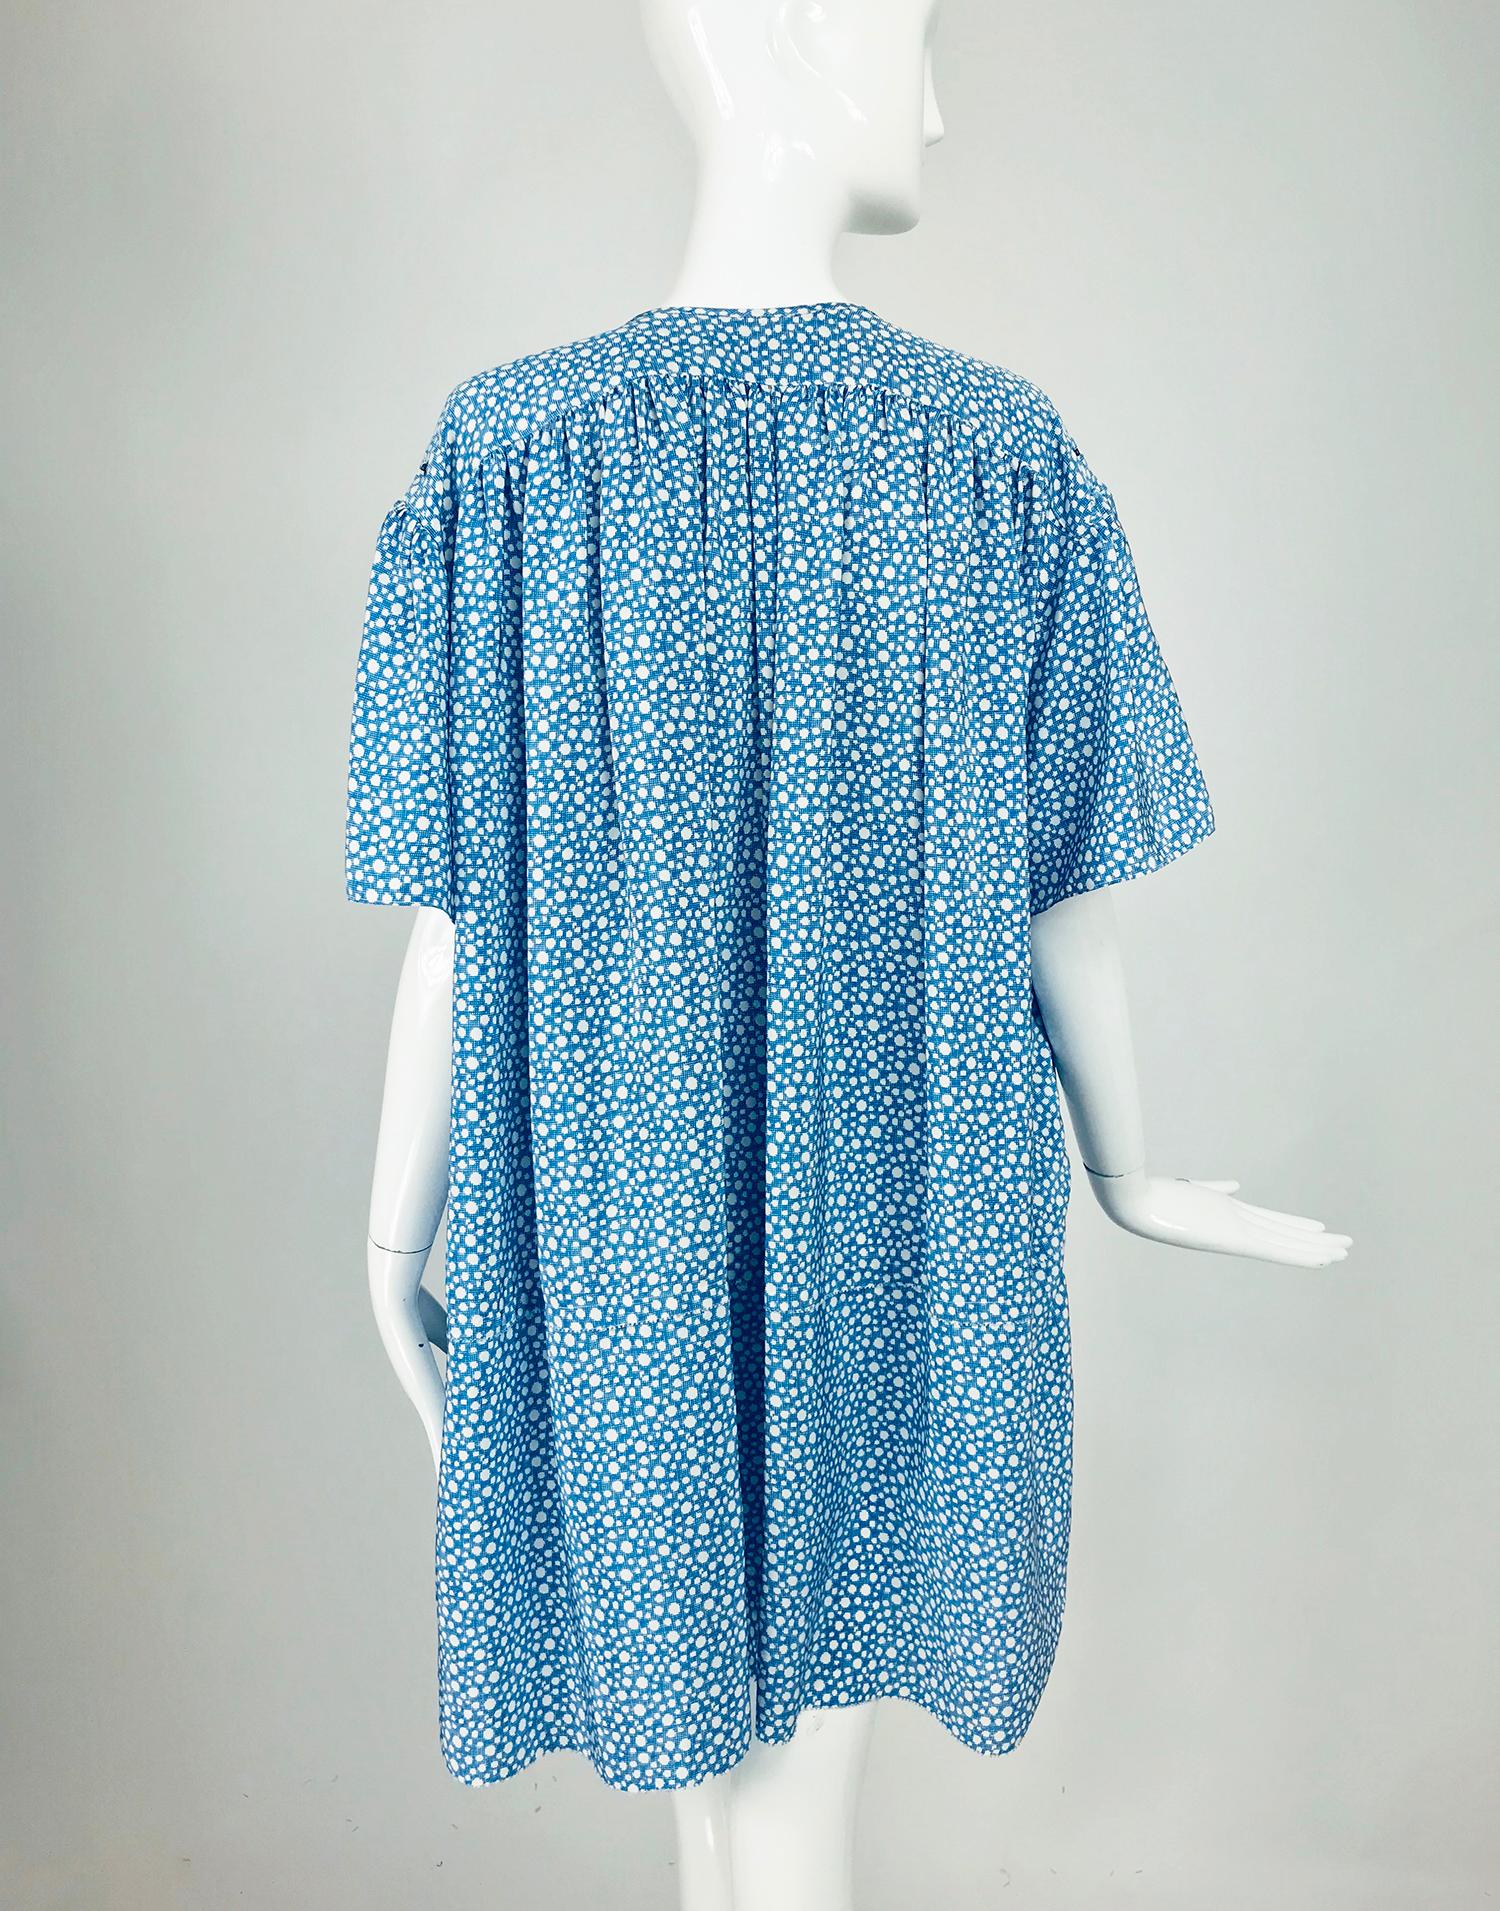 Balenciaga - Robe asymétrique en soie bleue et blanche imprimée de points   Pour femmes en vente